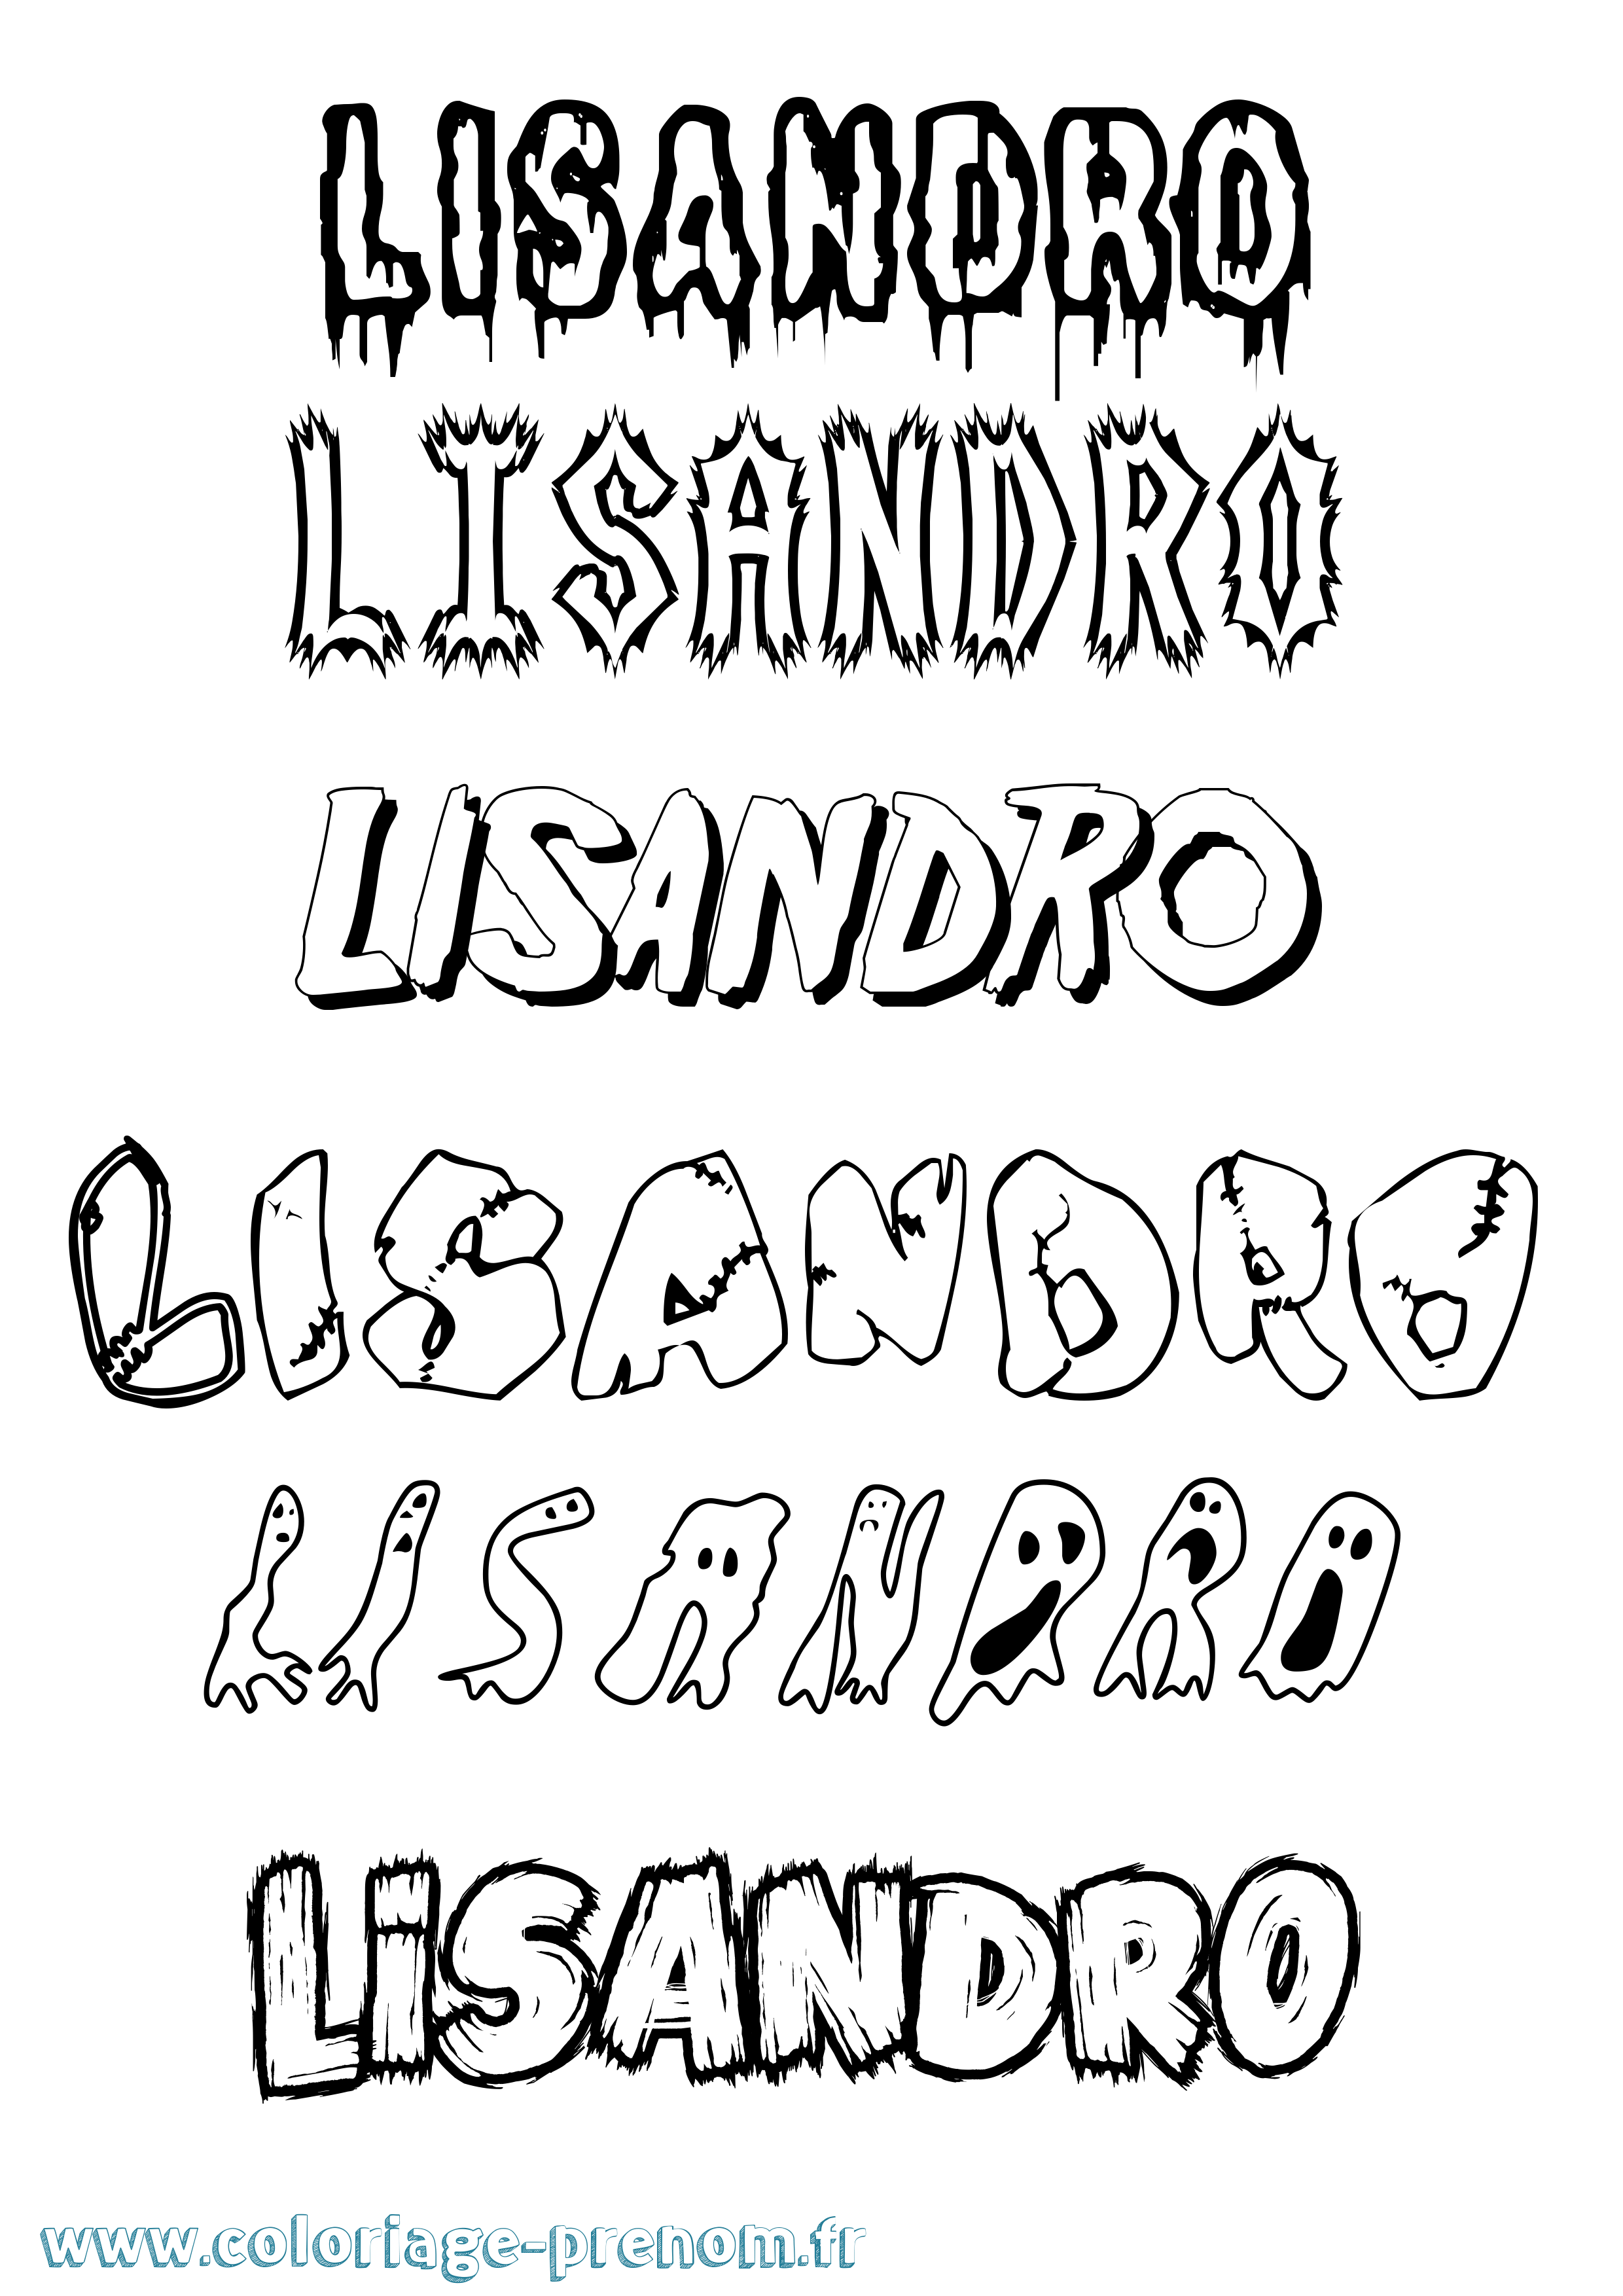 Coloriage prénom Lisandro Frisson